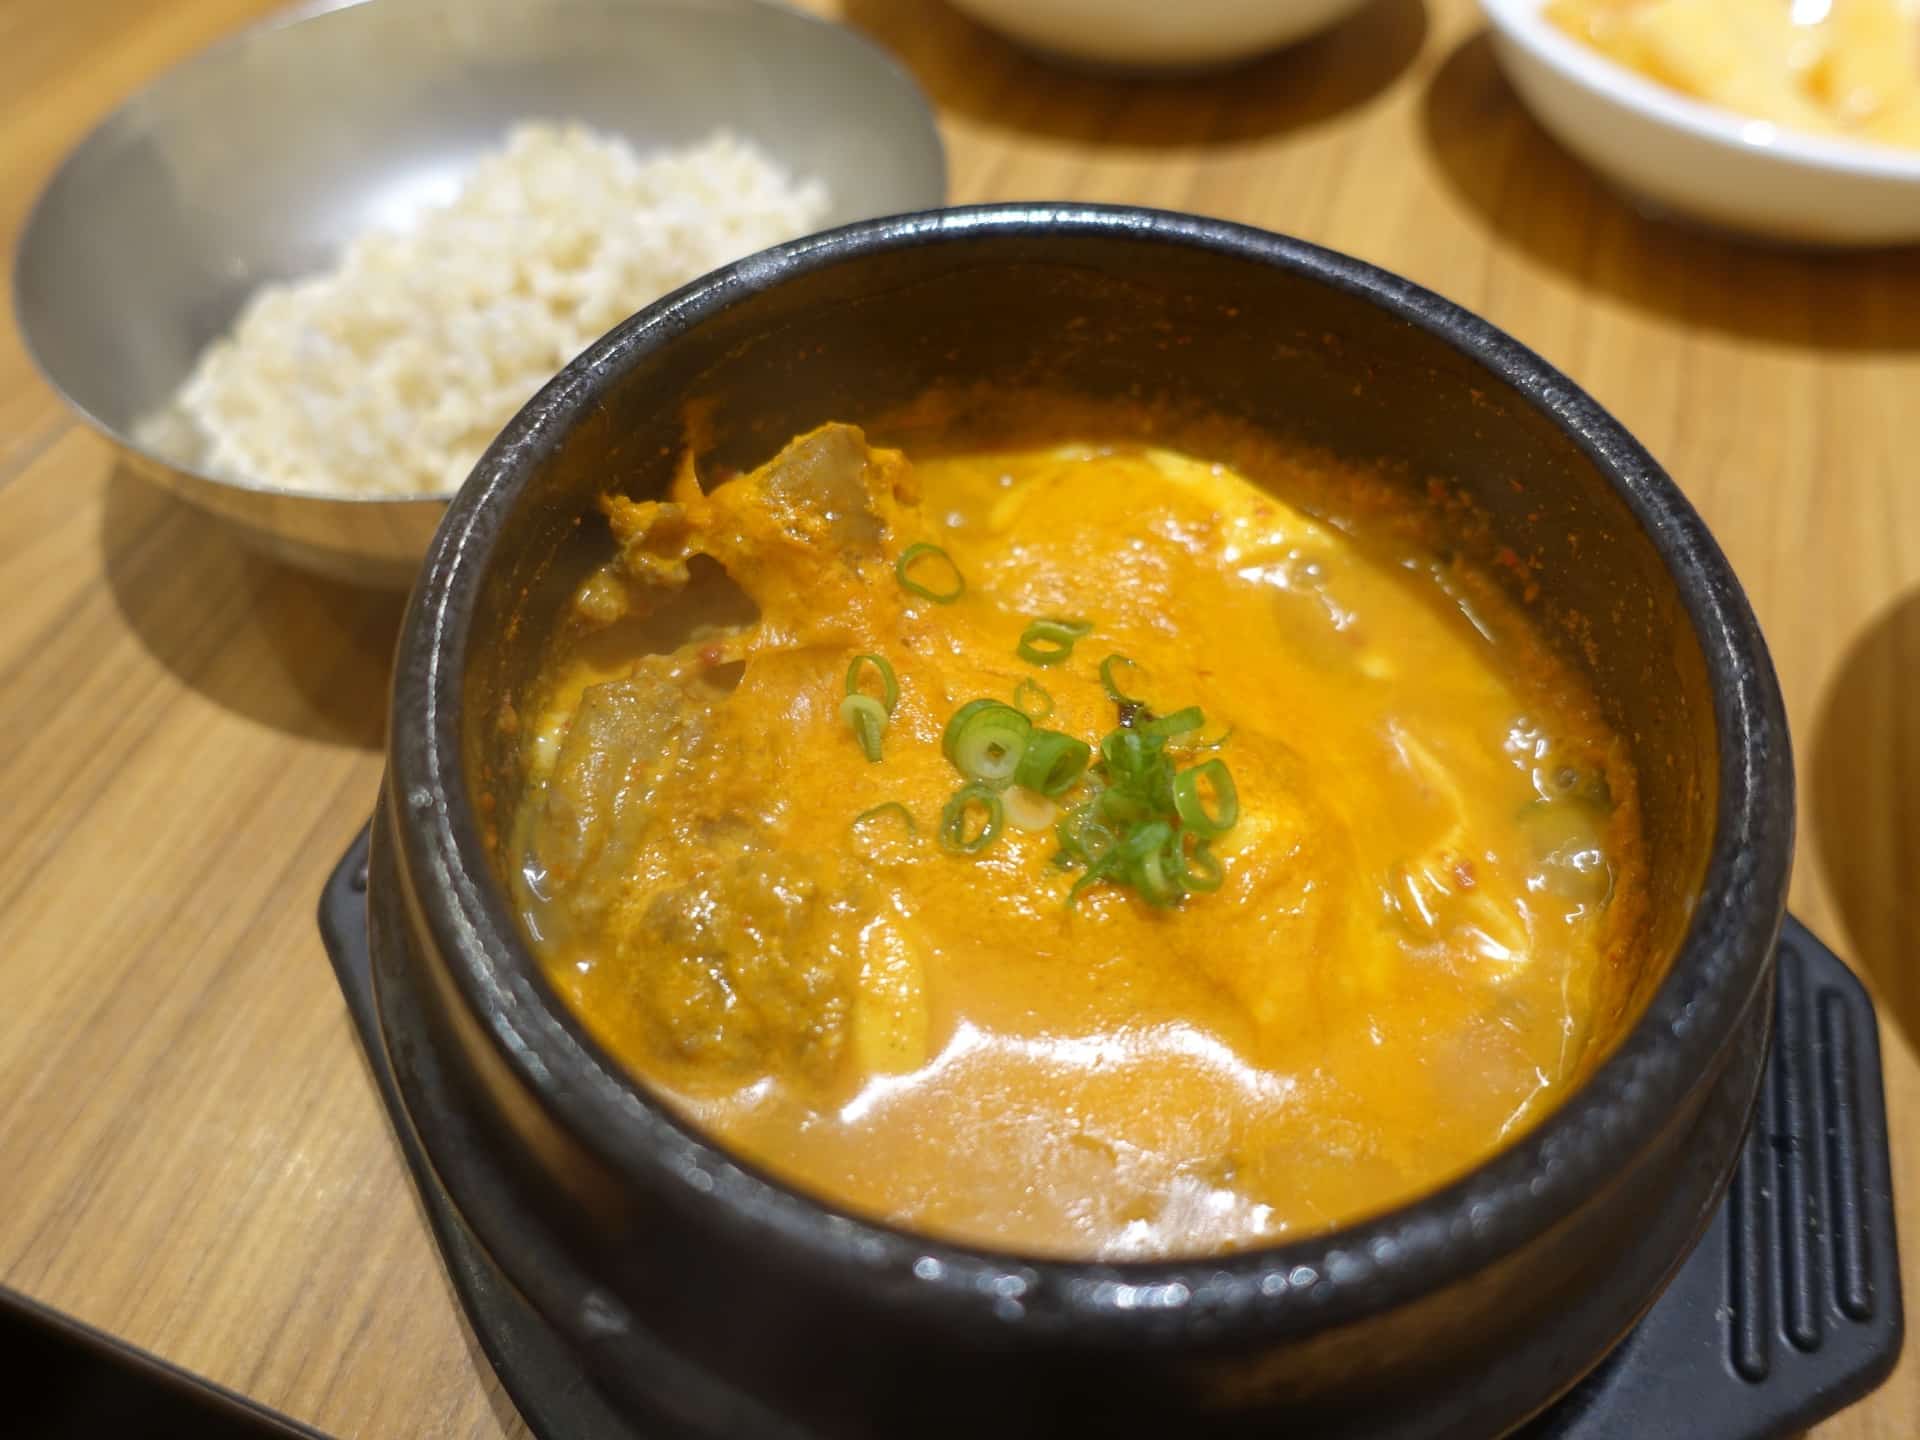 韓辛deli カンカンデリ 三宮で韓国料理の惣菜食べ放題ランチ トッポギやチヂミもあるよ